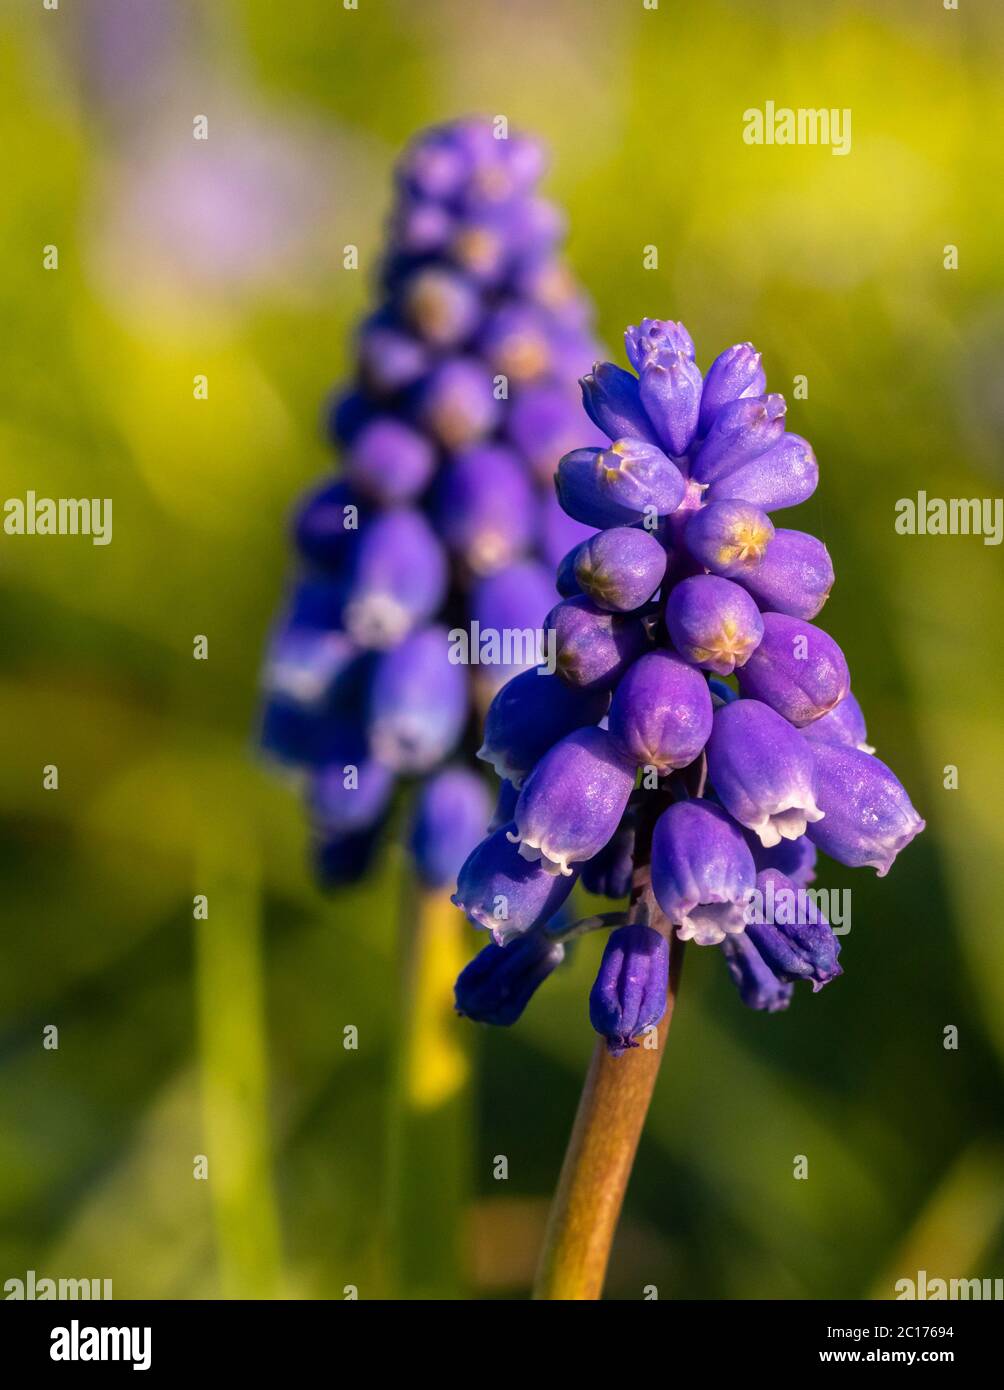 Muscari grape hyacinth blue flower buds spring season flowers macro image Stock Photo